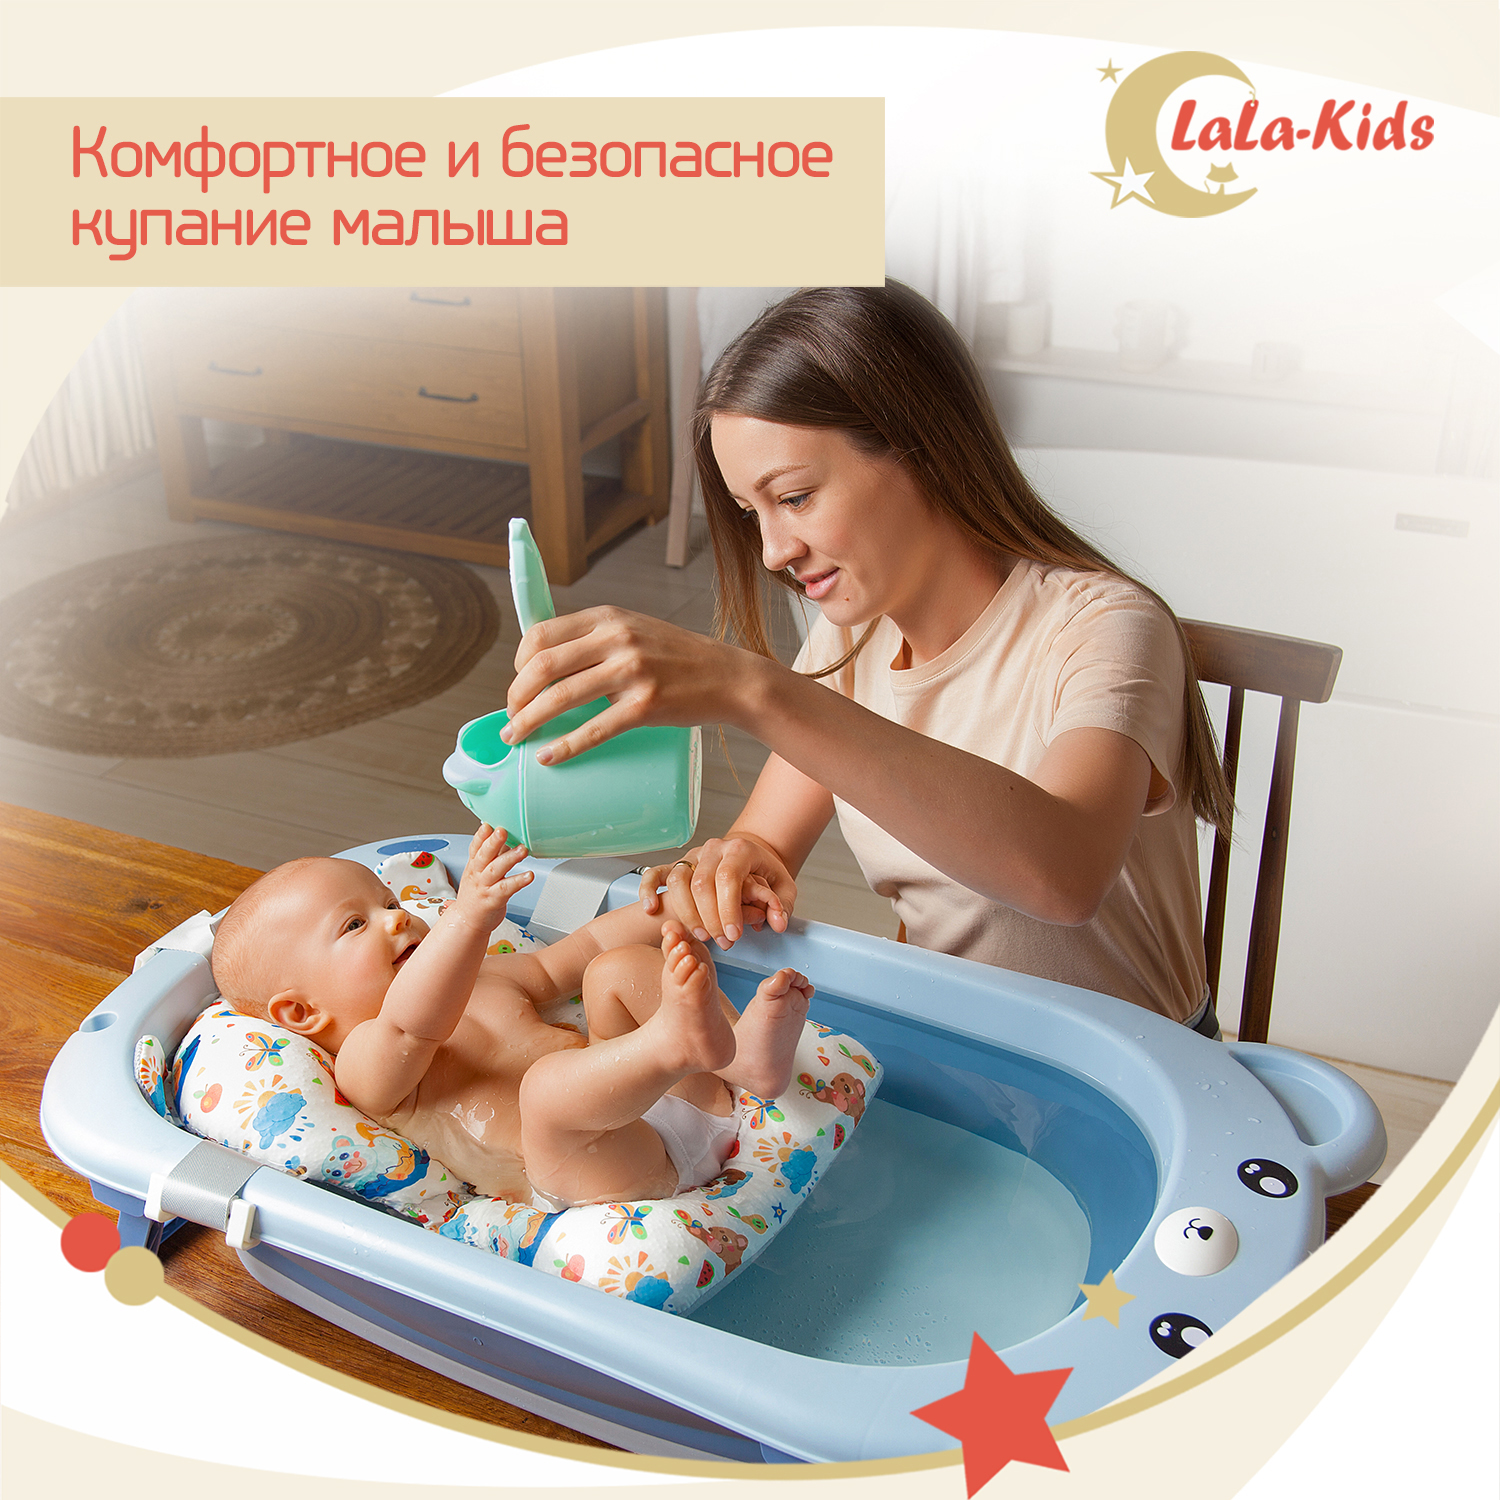 Ванночка для новорожденных LaLa-Kids складная с матрасиком ярко-синим в комплекте - фото 3